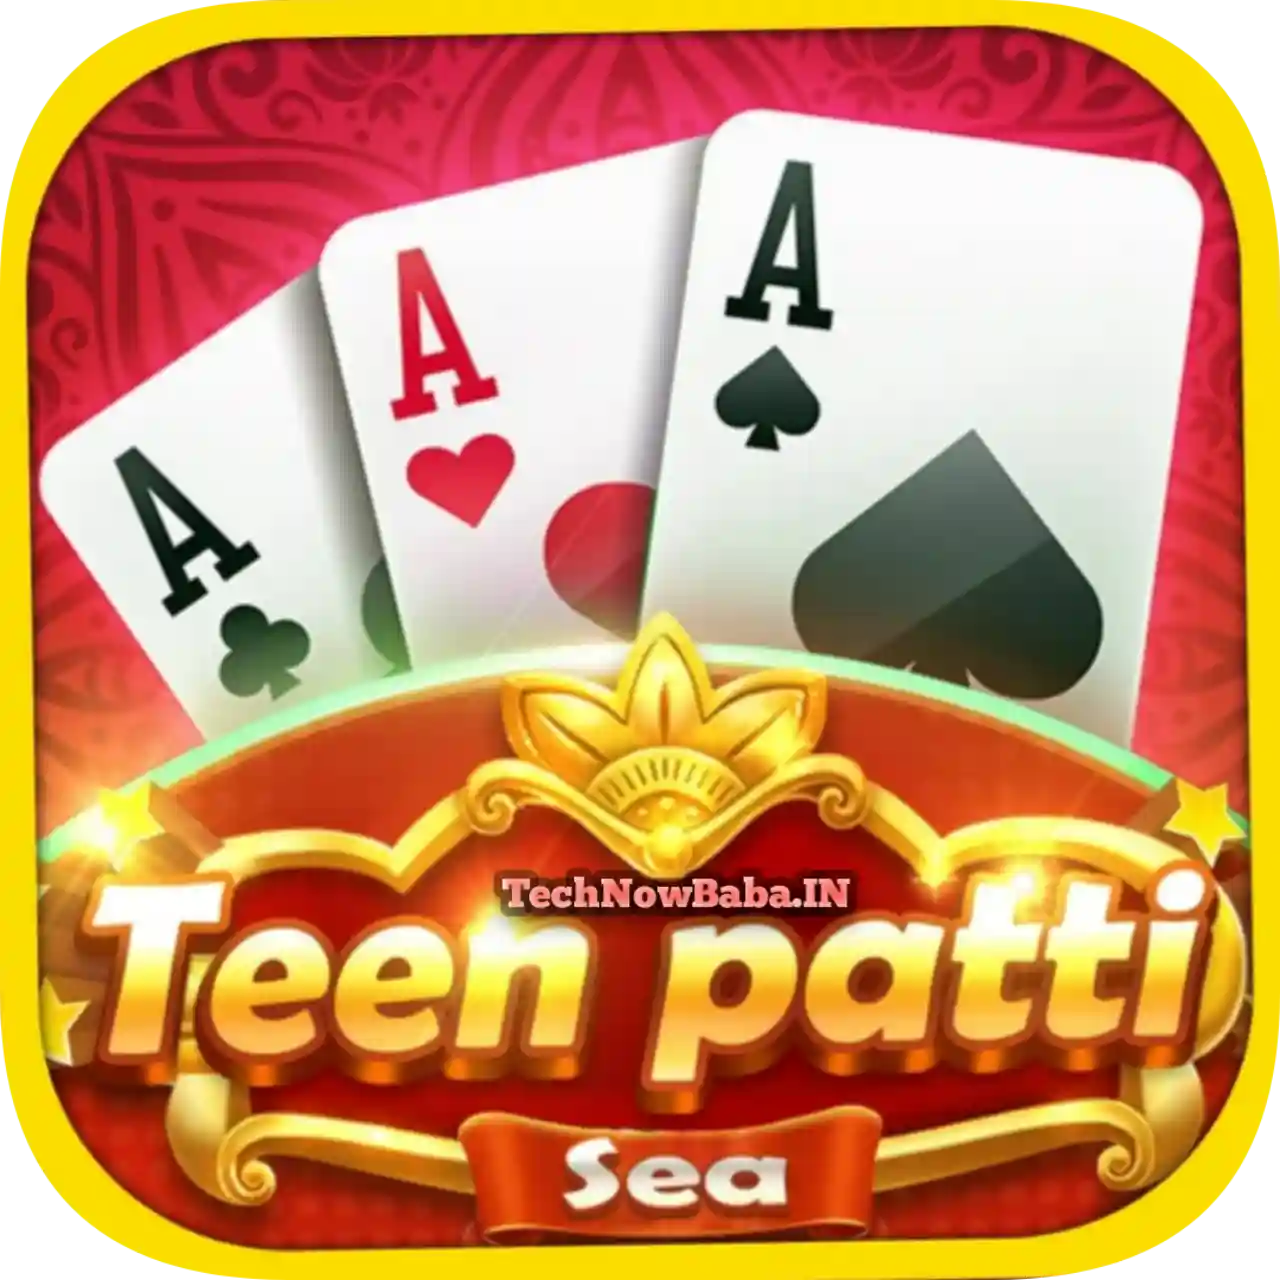 Teen Patti Sea App Download All Teen Patti Apps List - Teen Patti Kala App Download